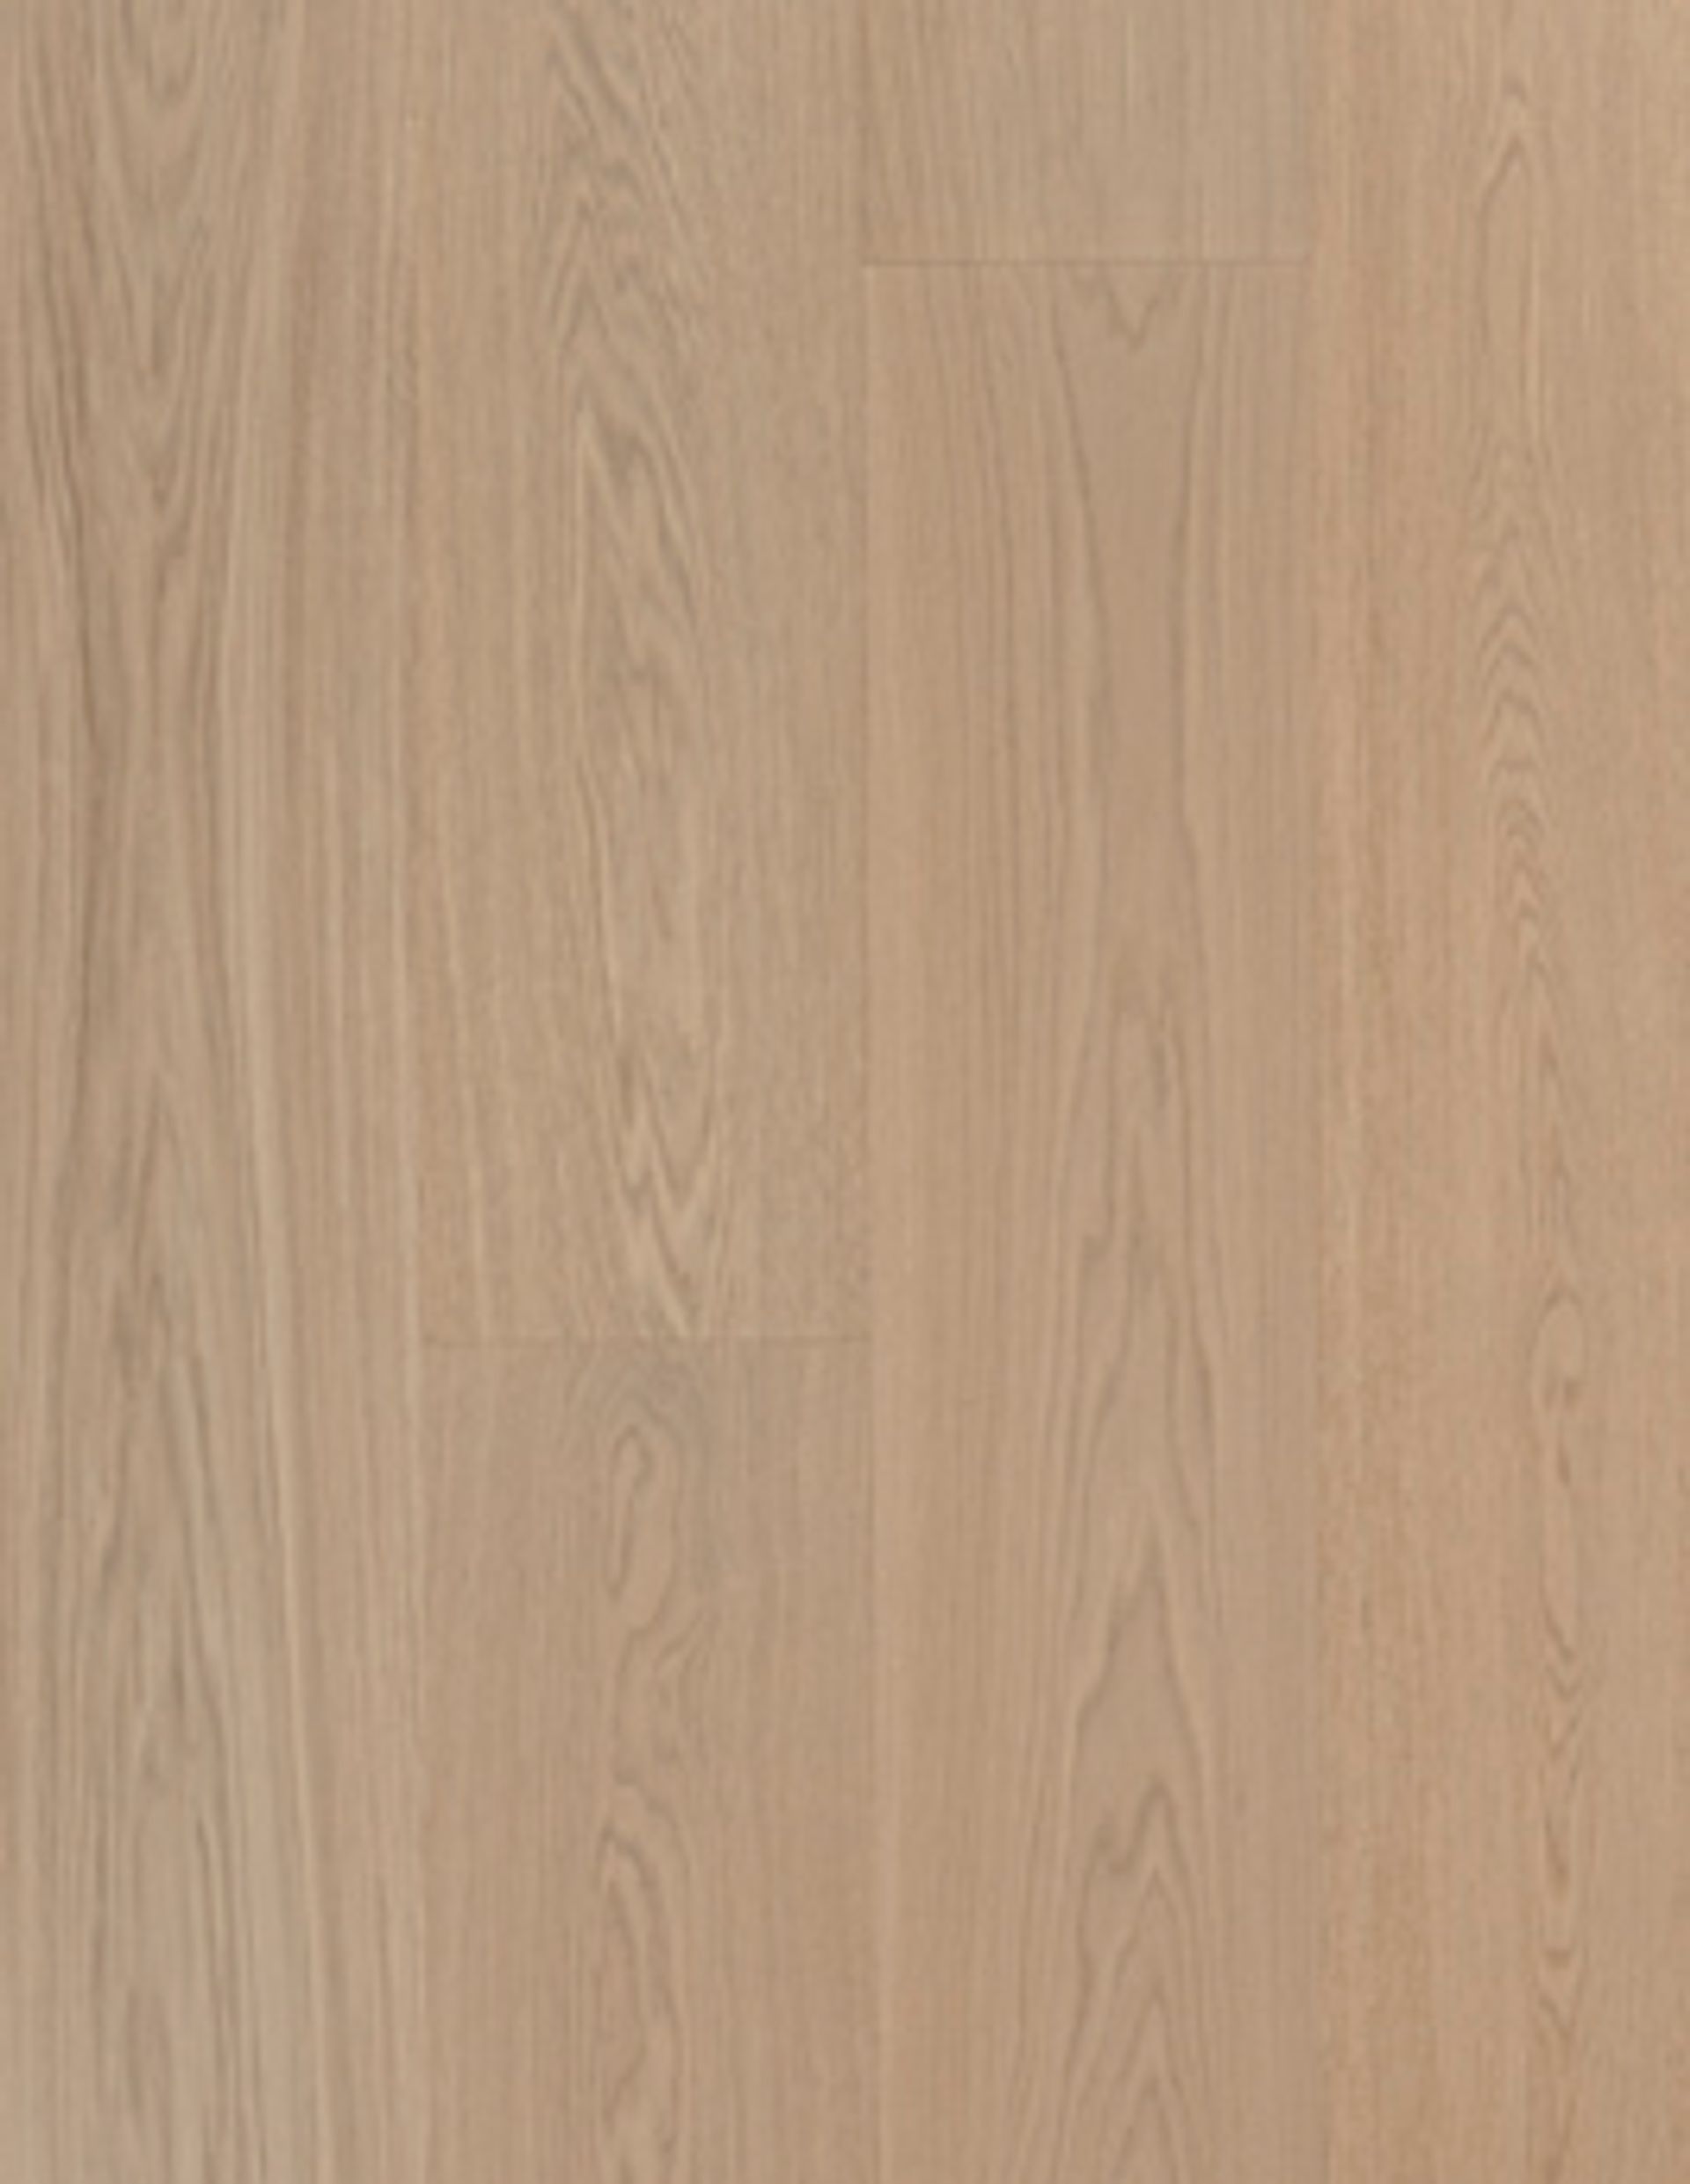 Revêtement sol bois DENSIFIE HYGIENIUS 271 Chêne exclusif, chêne gris, verni, larg. 27.10 cm